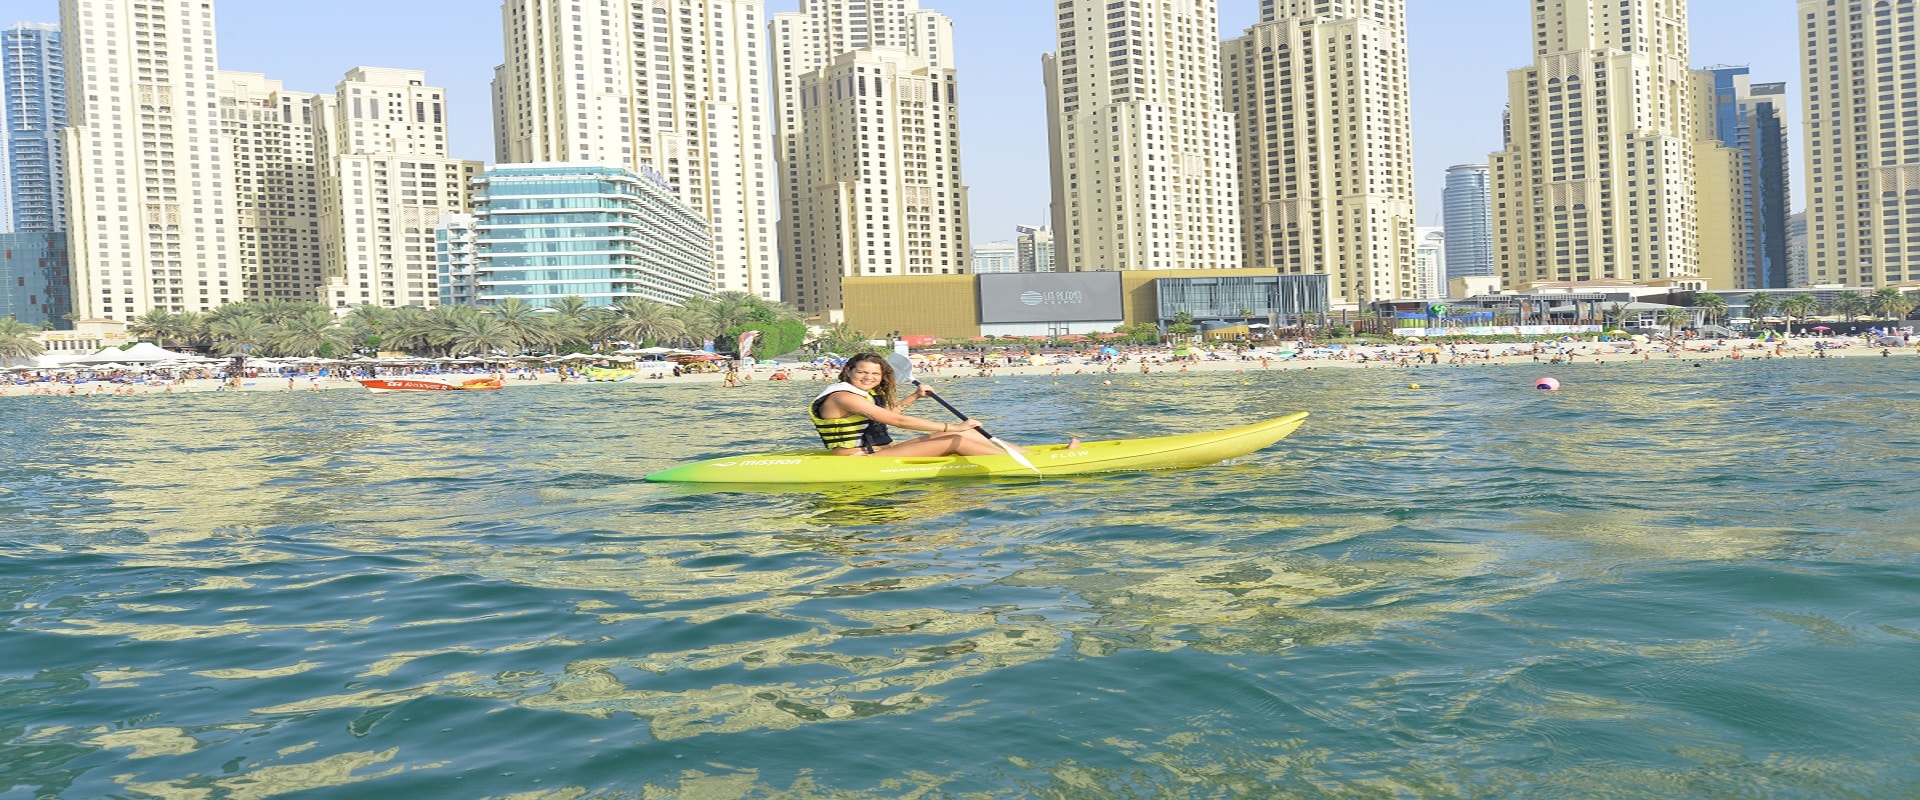 Kayaking In Dubai